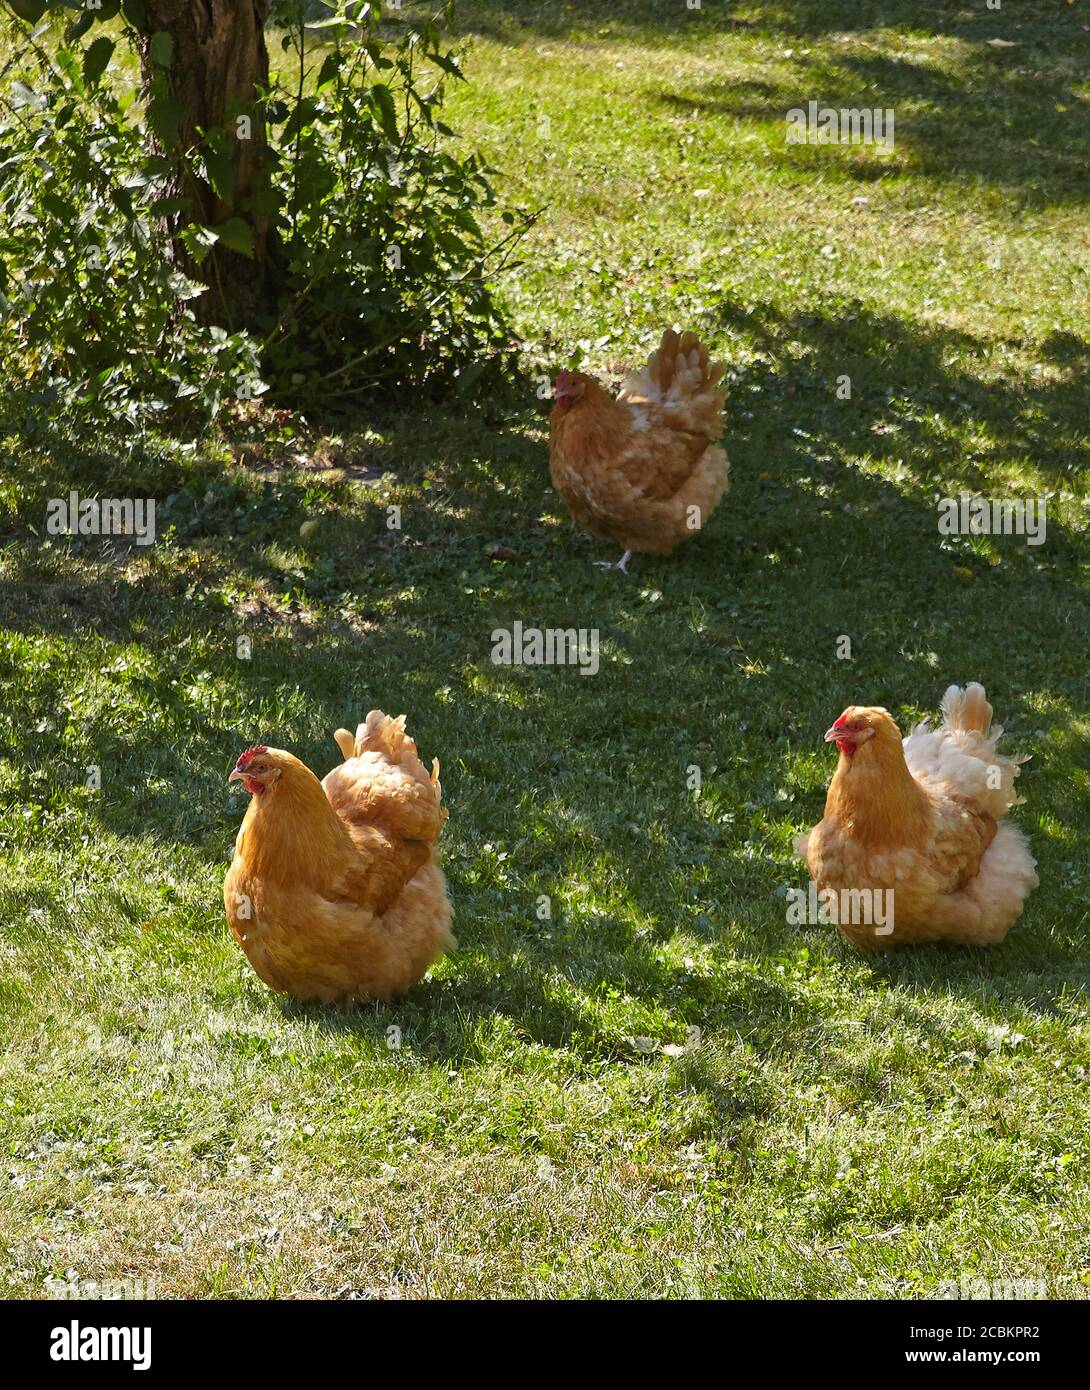 Poulet orpington poulet à la poule libre dans un jardin. Malmkoping suède Banque D'Images